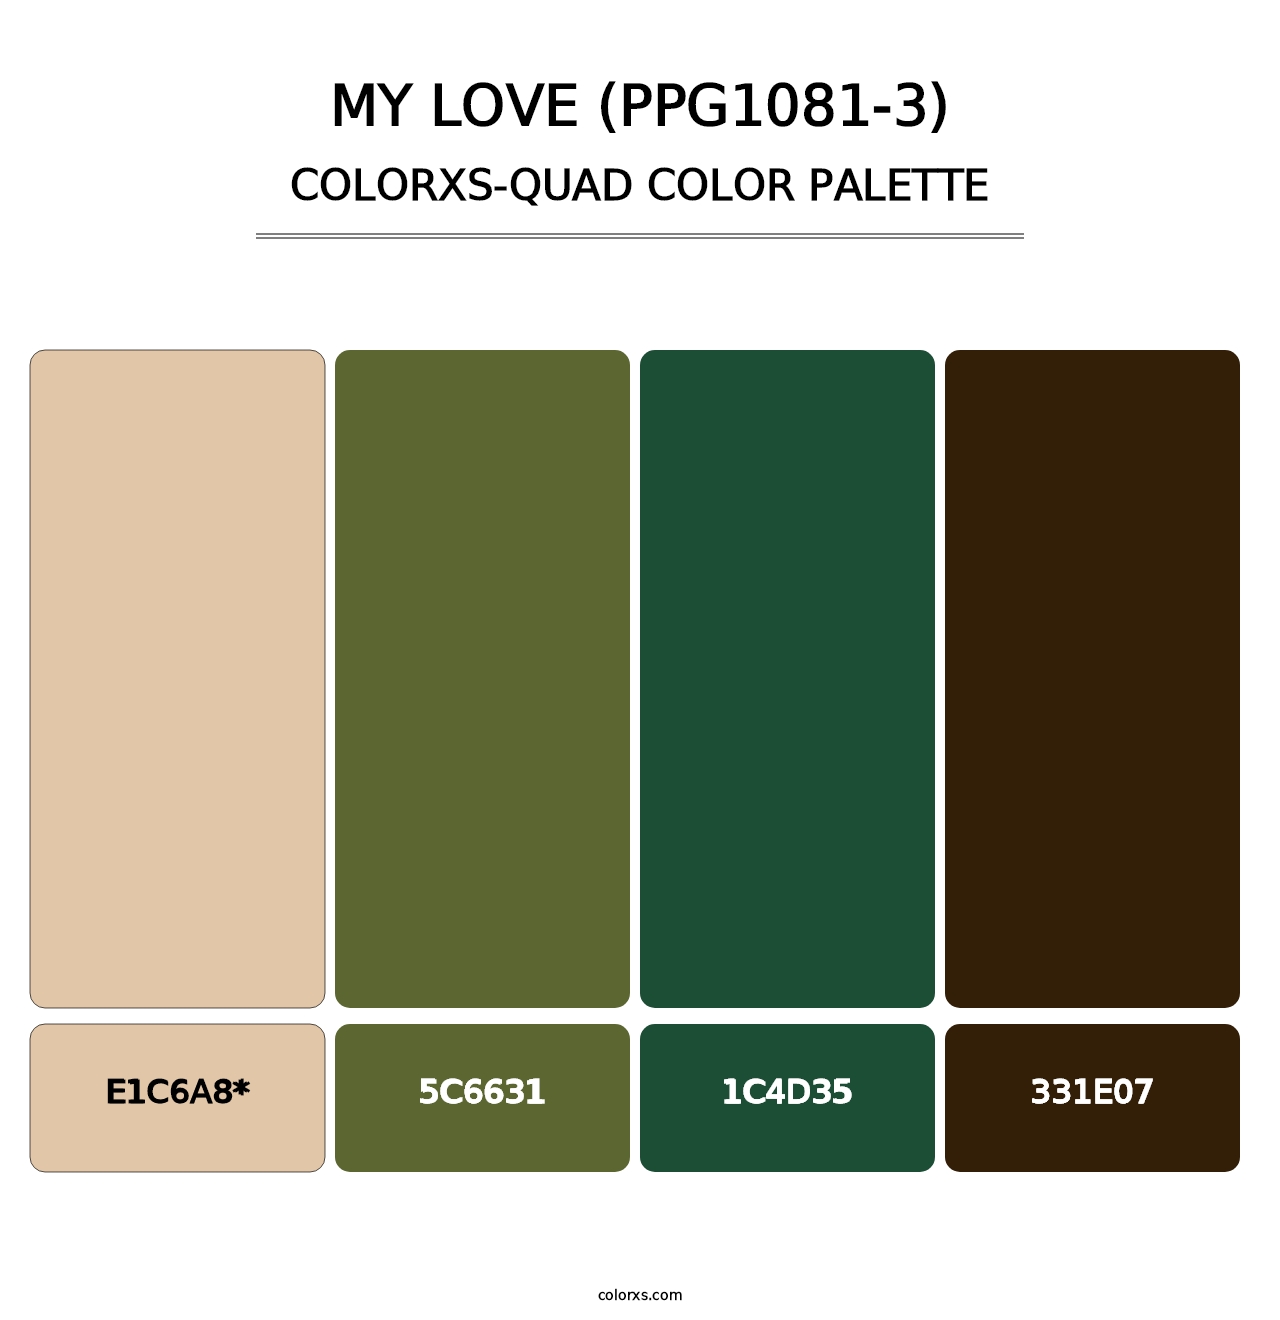 My Love (PPG1081-3) - Colorxs Quad Palette